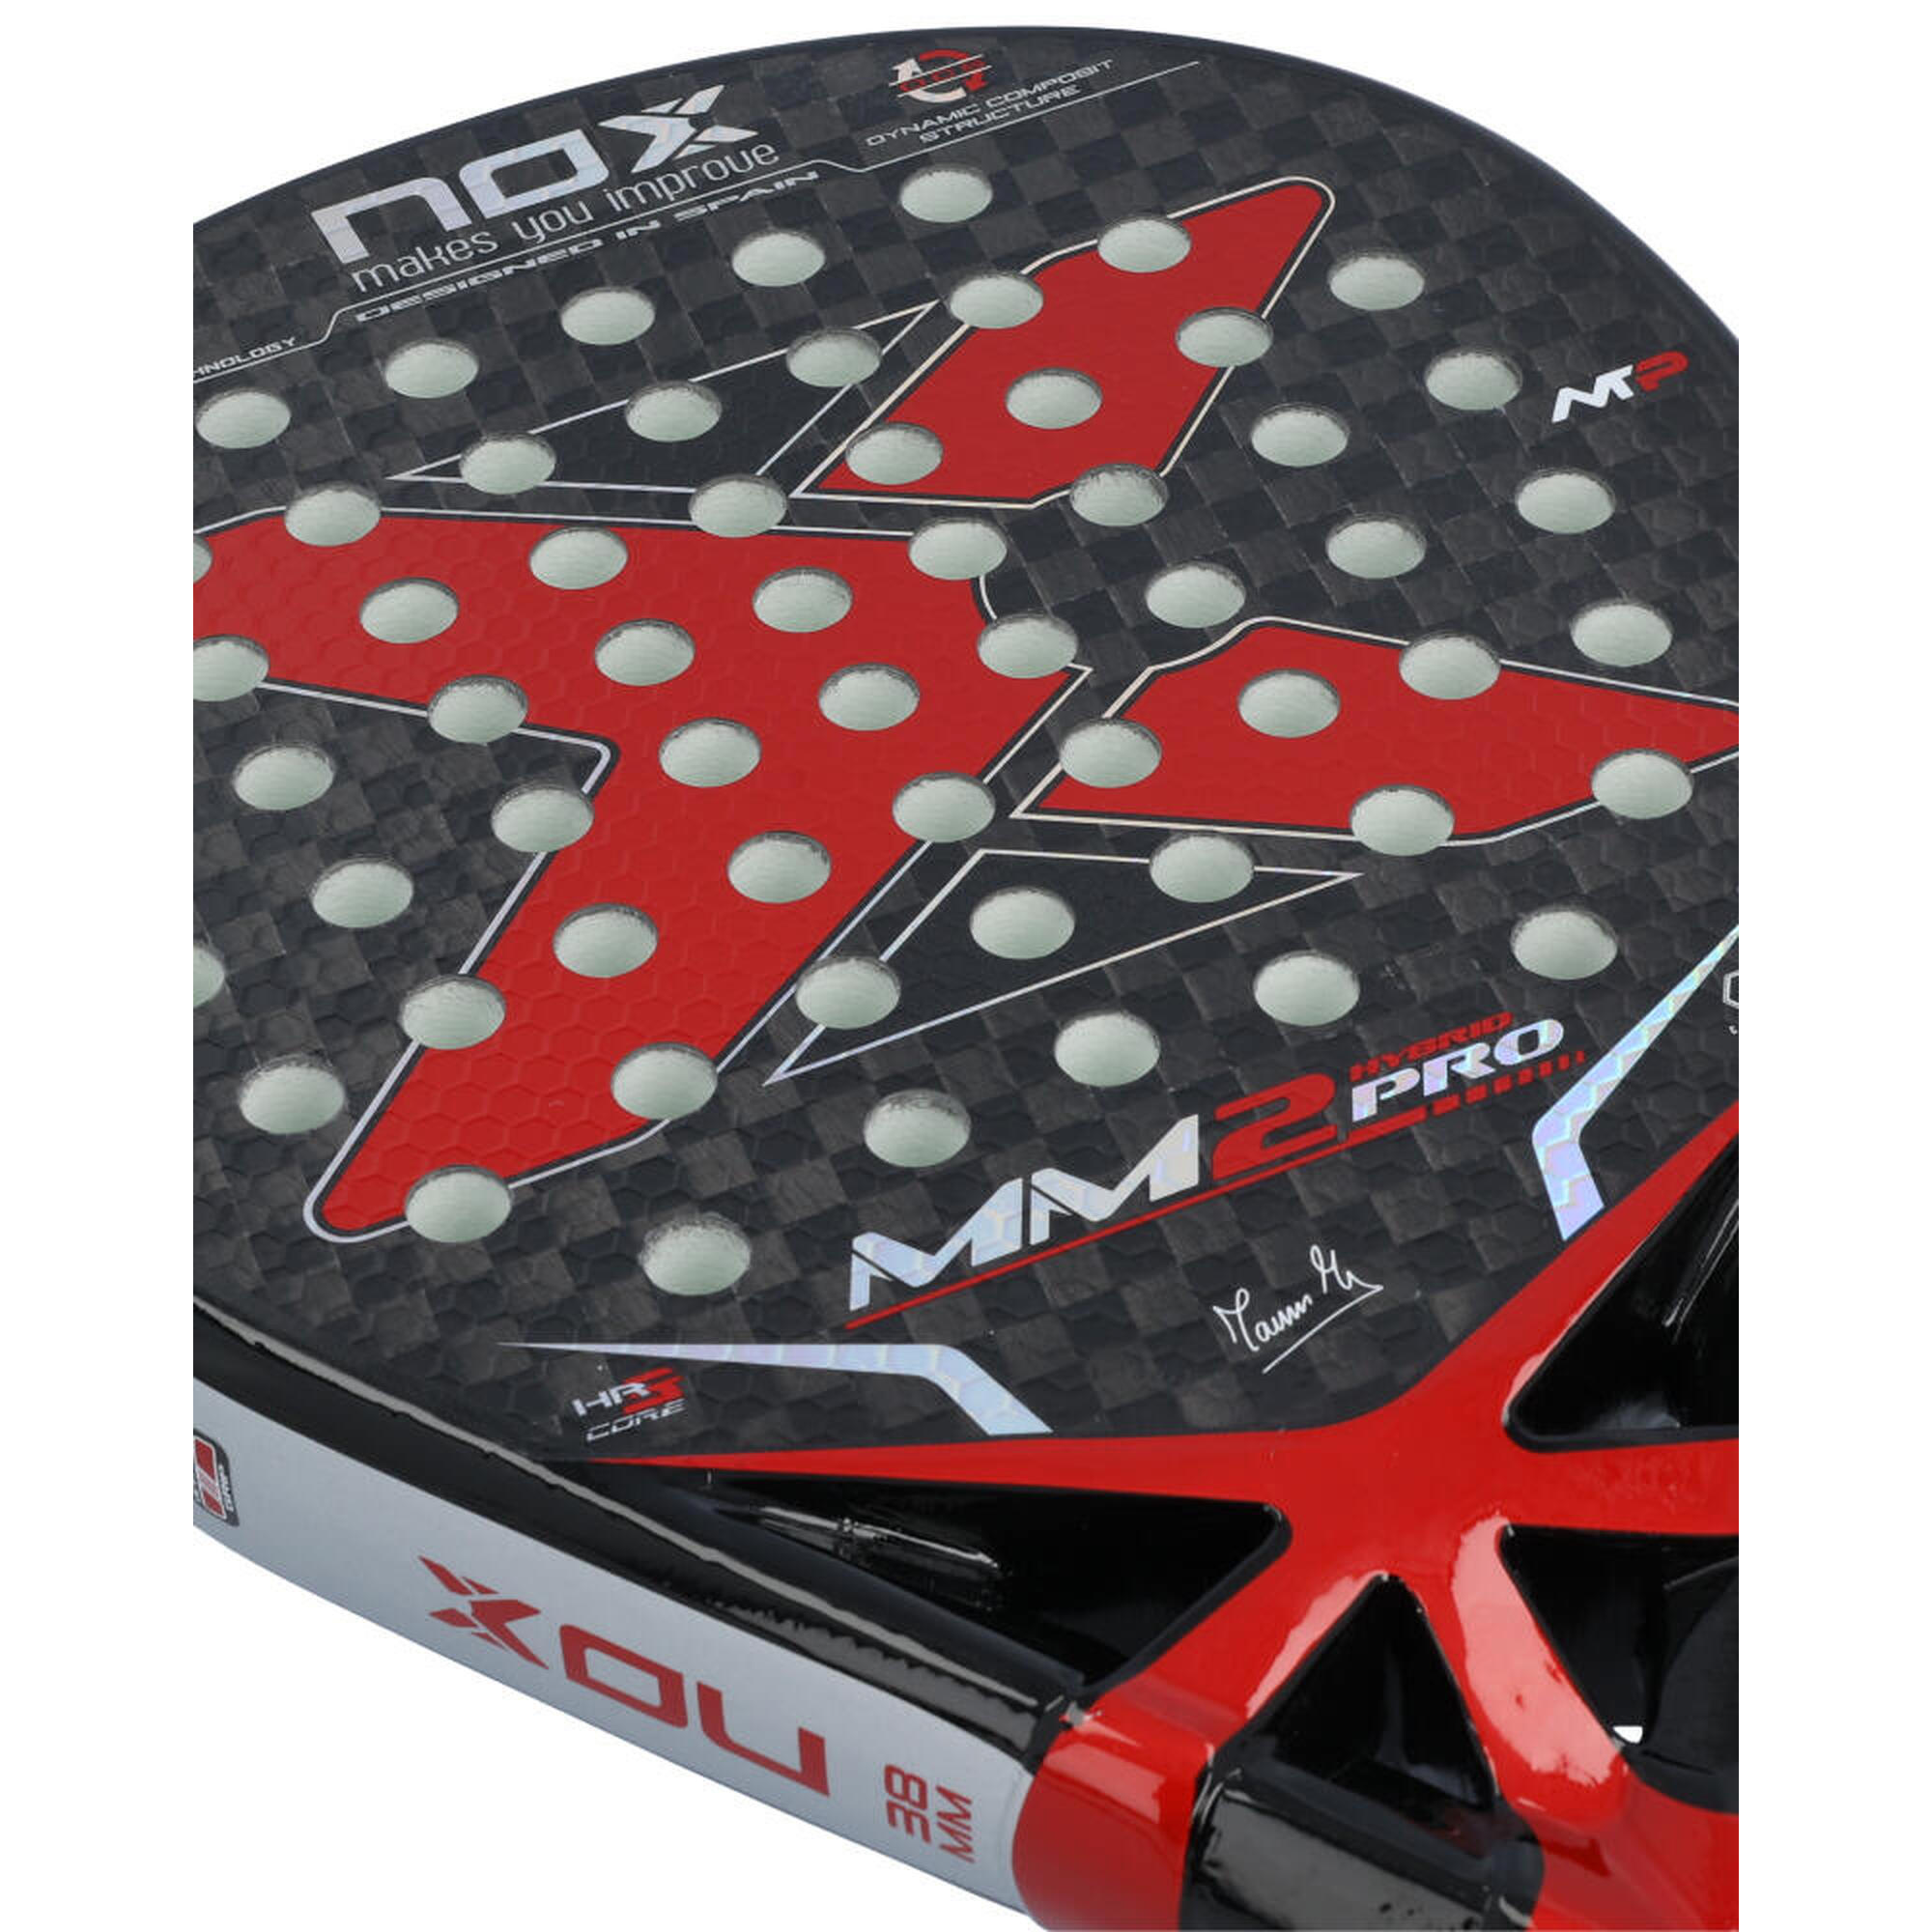 Nox Mm2 Pro By Manu Martin